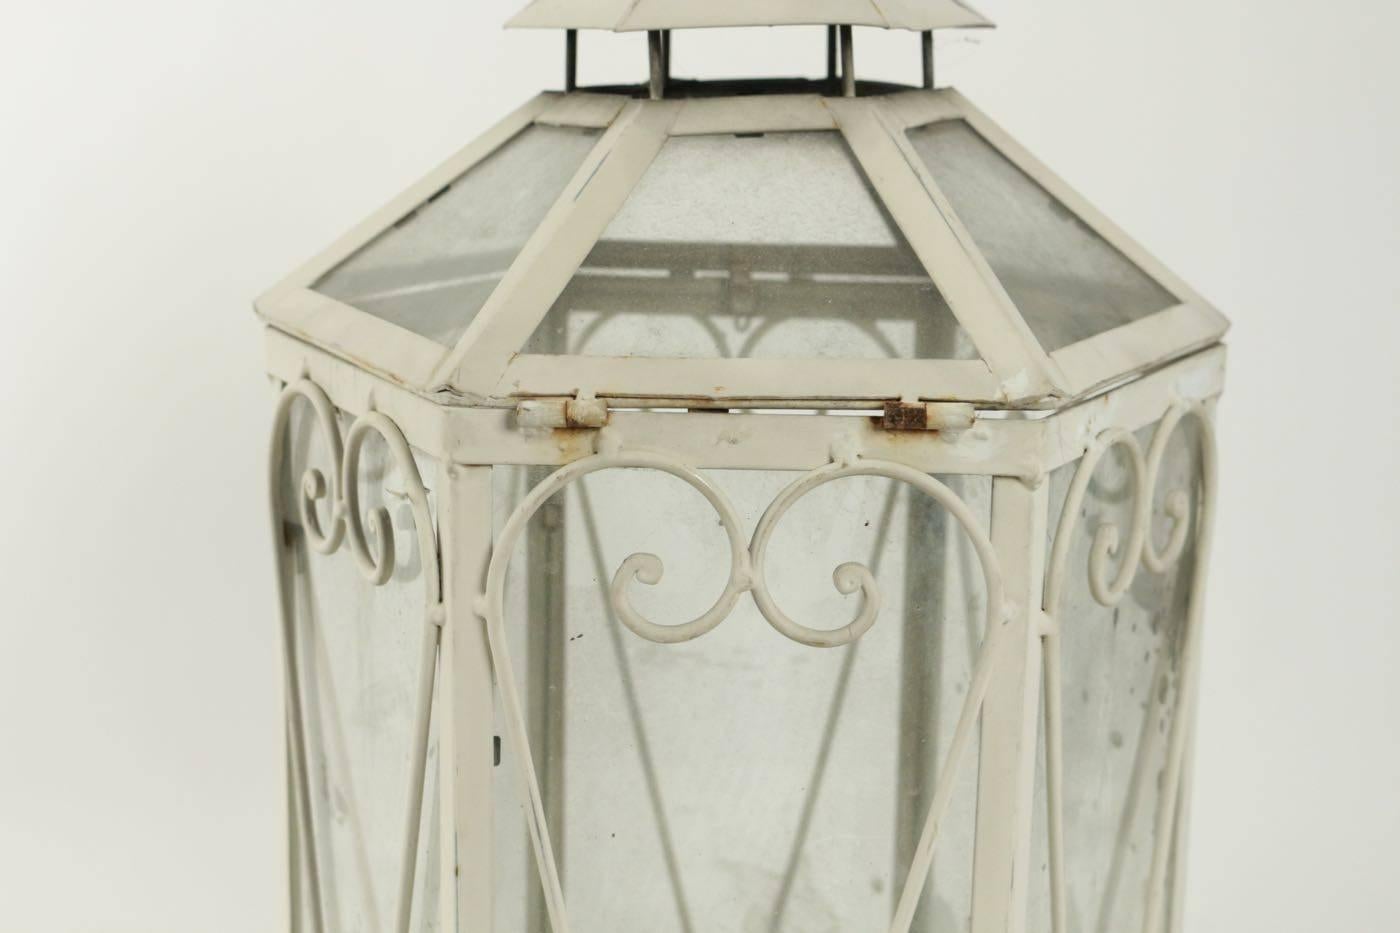 Lanterne en fer forgé en forme de serre miniature, 20e siècle.
 